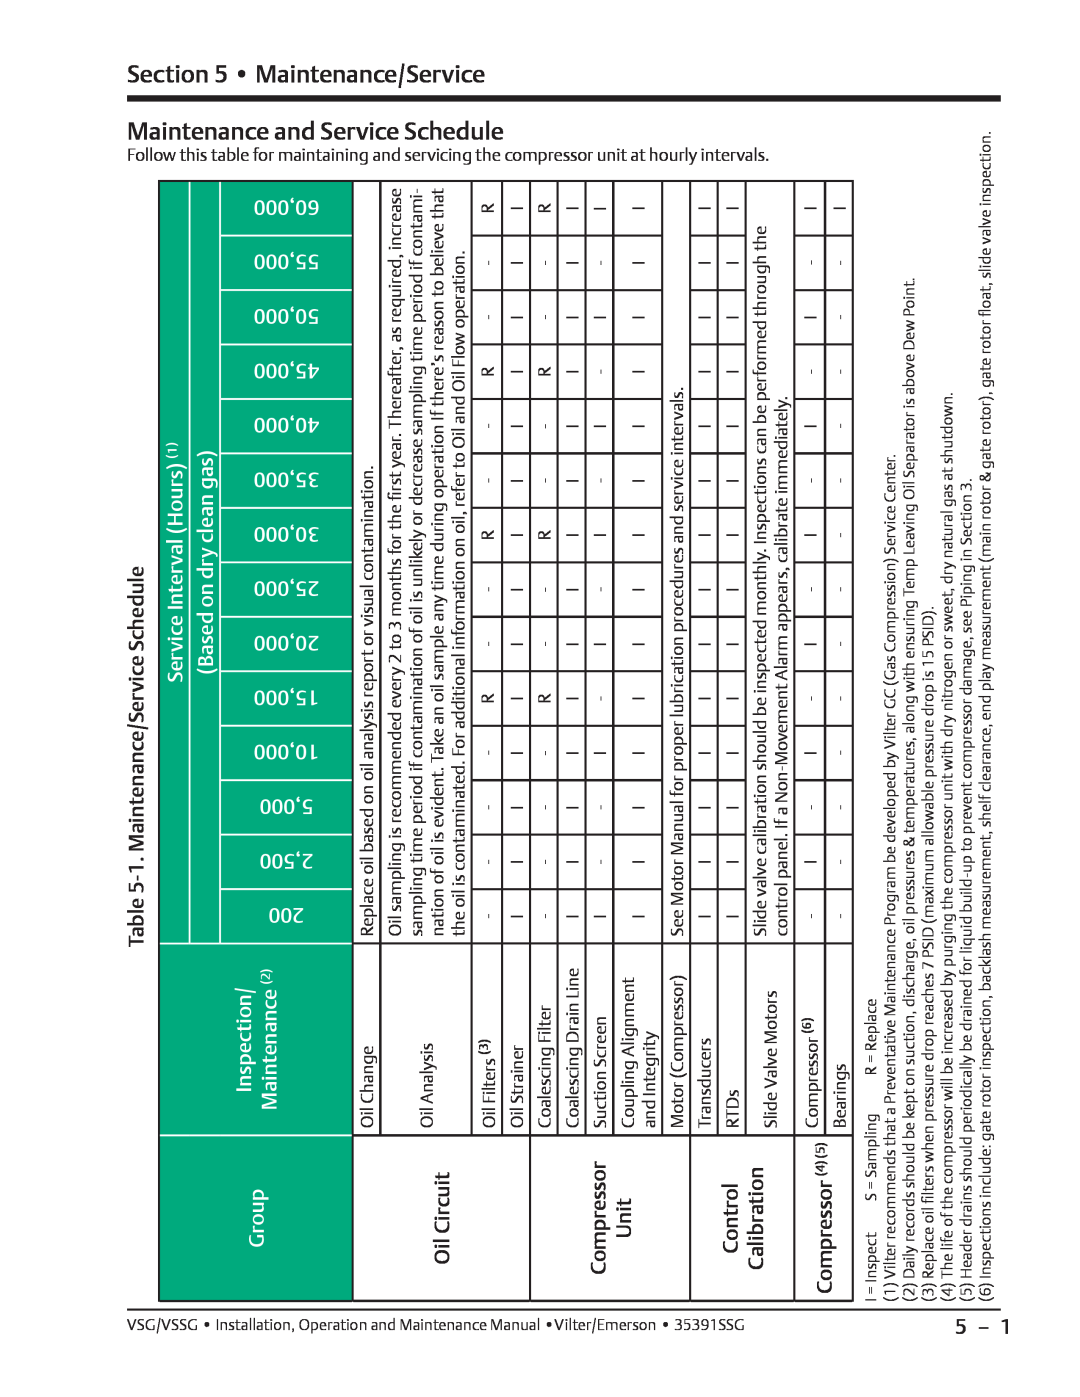 Emerson VSG, VSSG manual 1. Maintenance/Service Schedule, Oil Circuit, Unit, Control, Calibration 